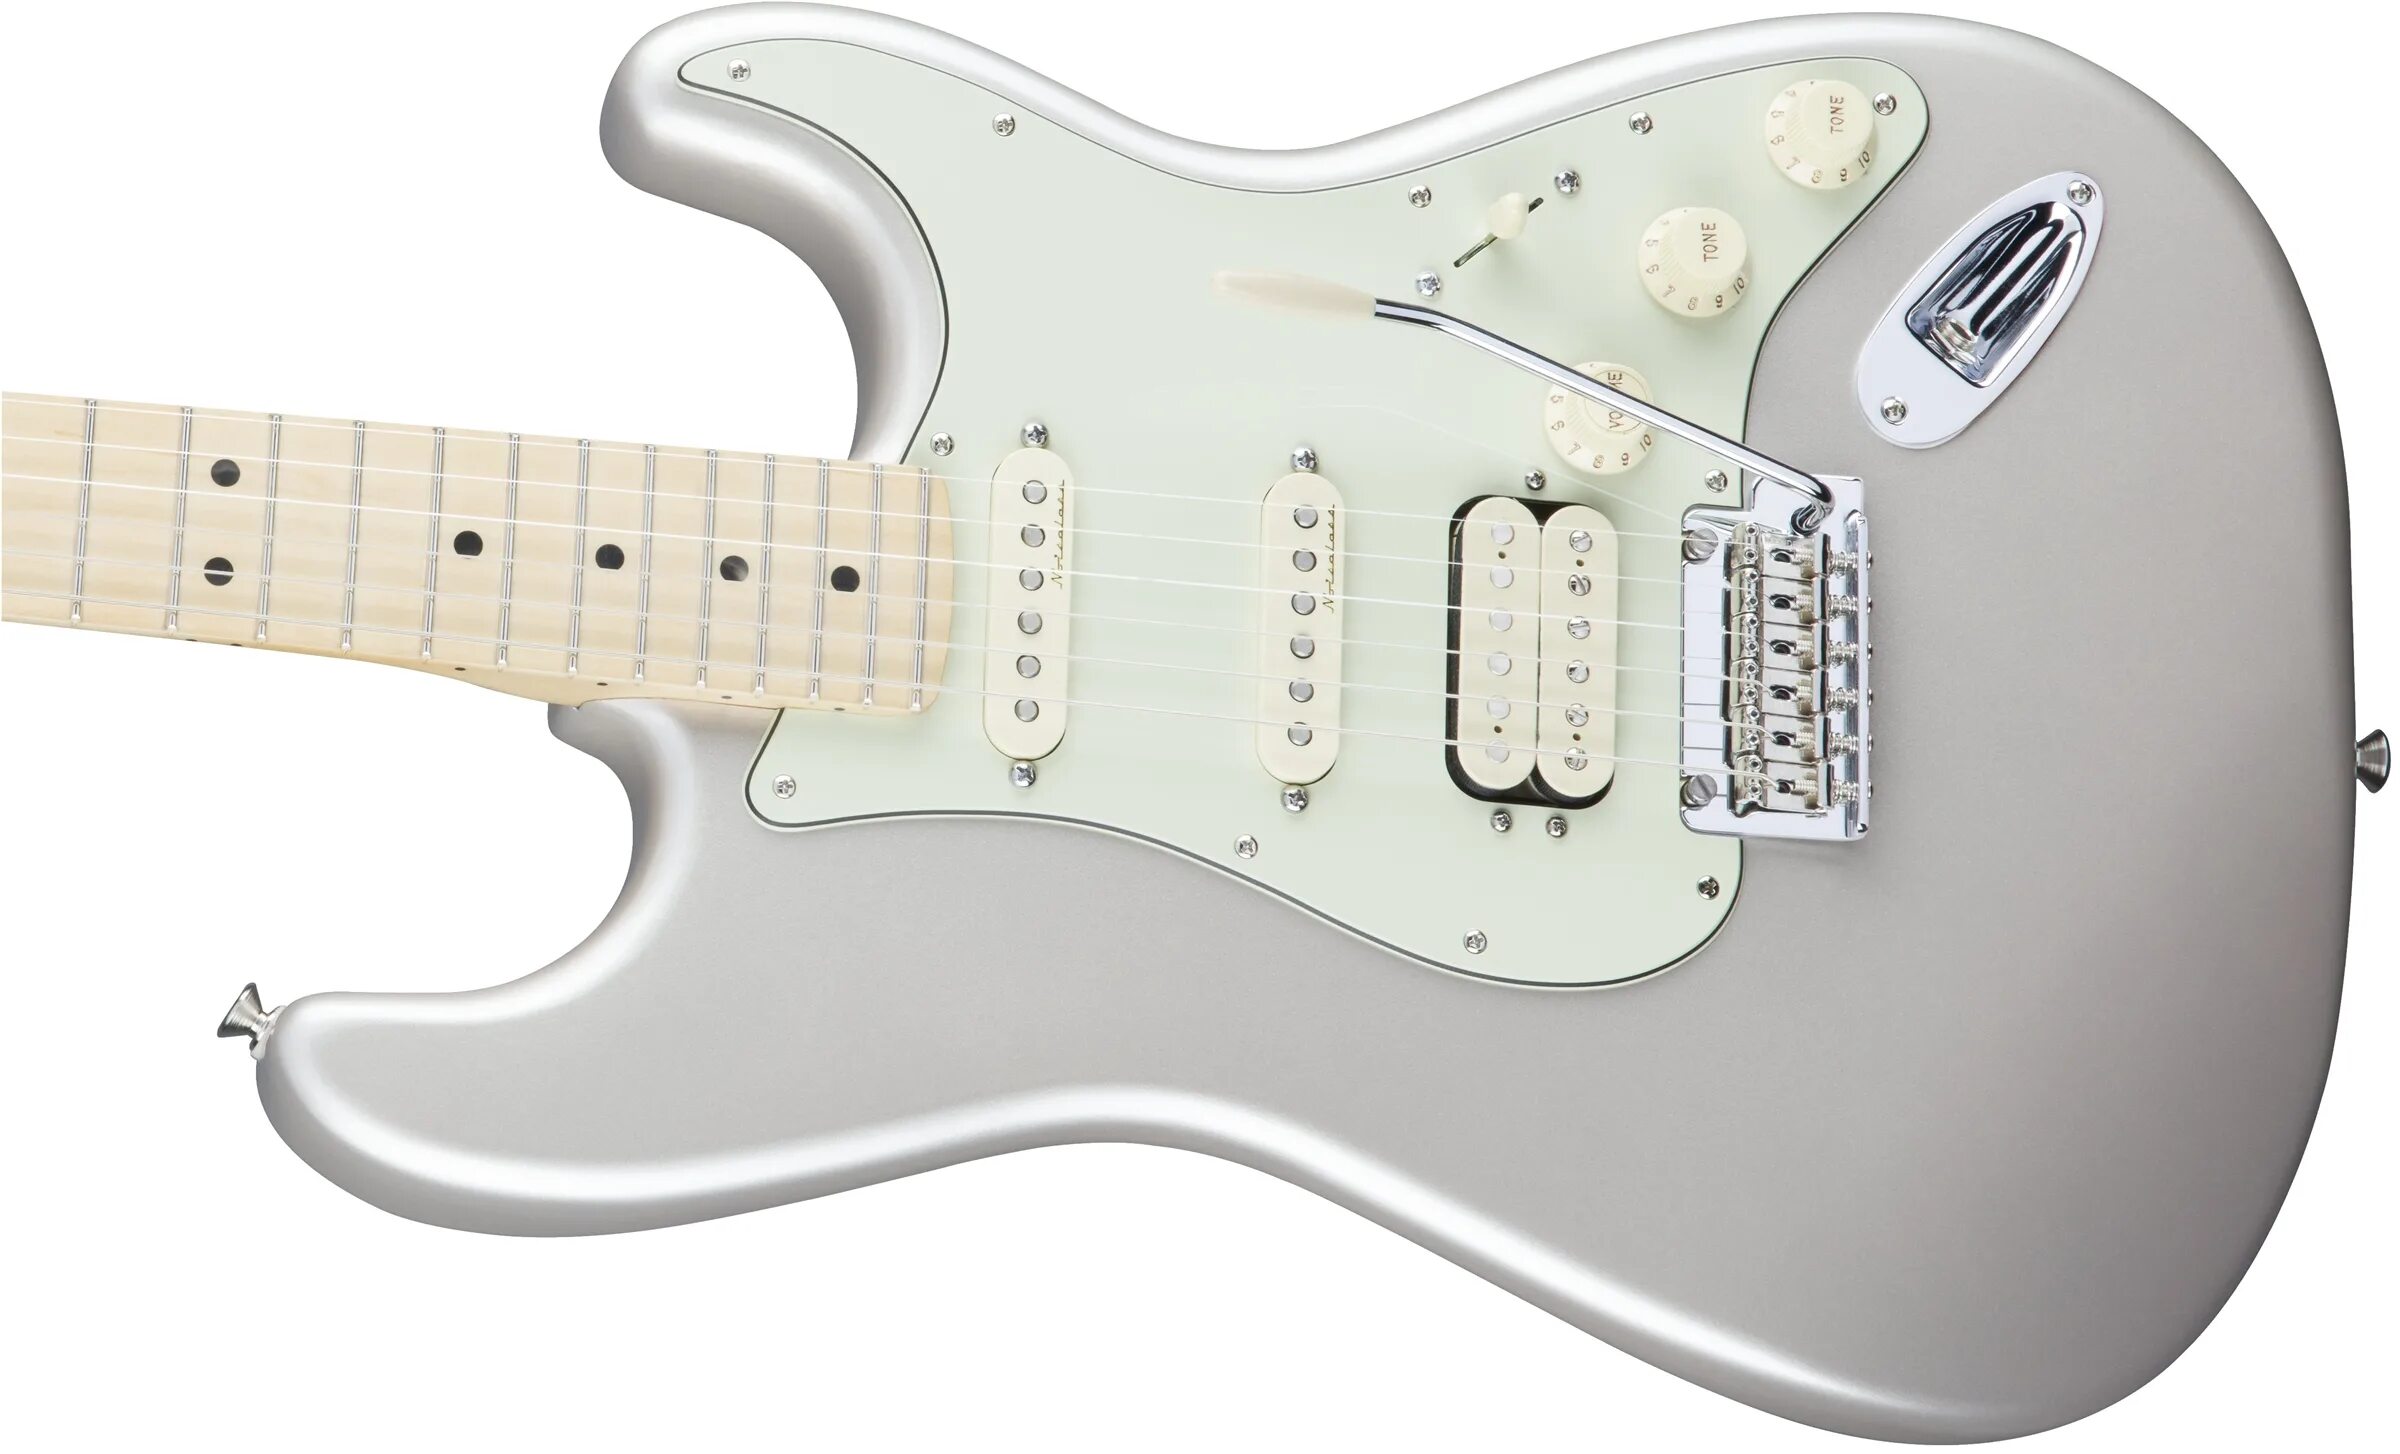 Электрогитара Fender Deluxe Strat. Стратокастер HSS. Белый стратокастер HSS. Страт HSS.